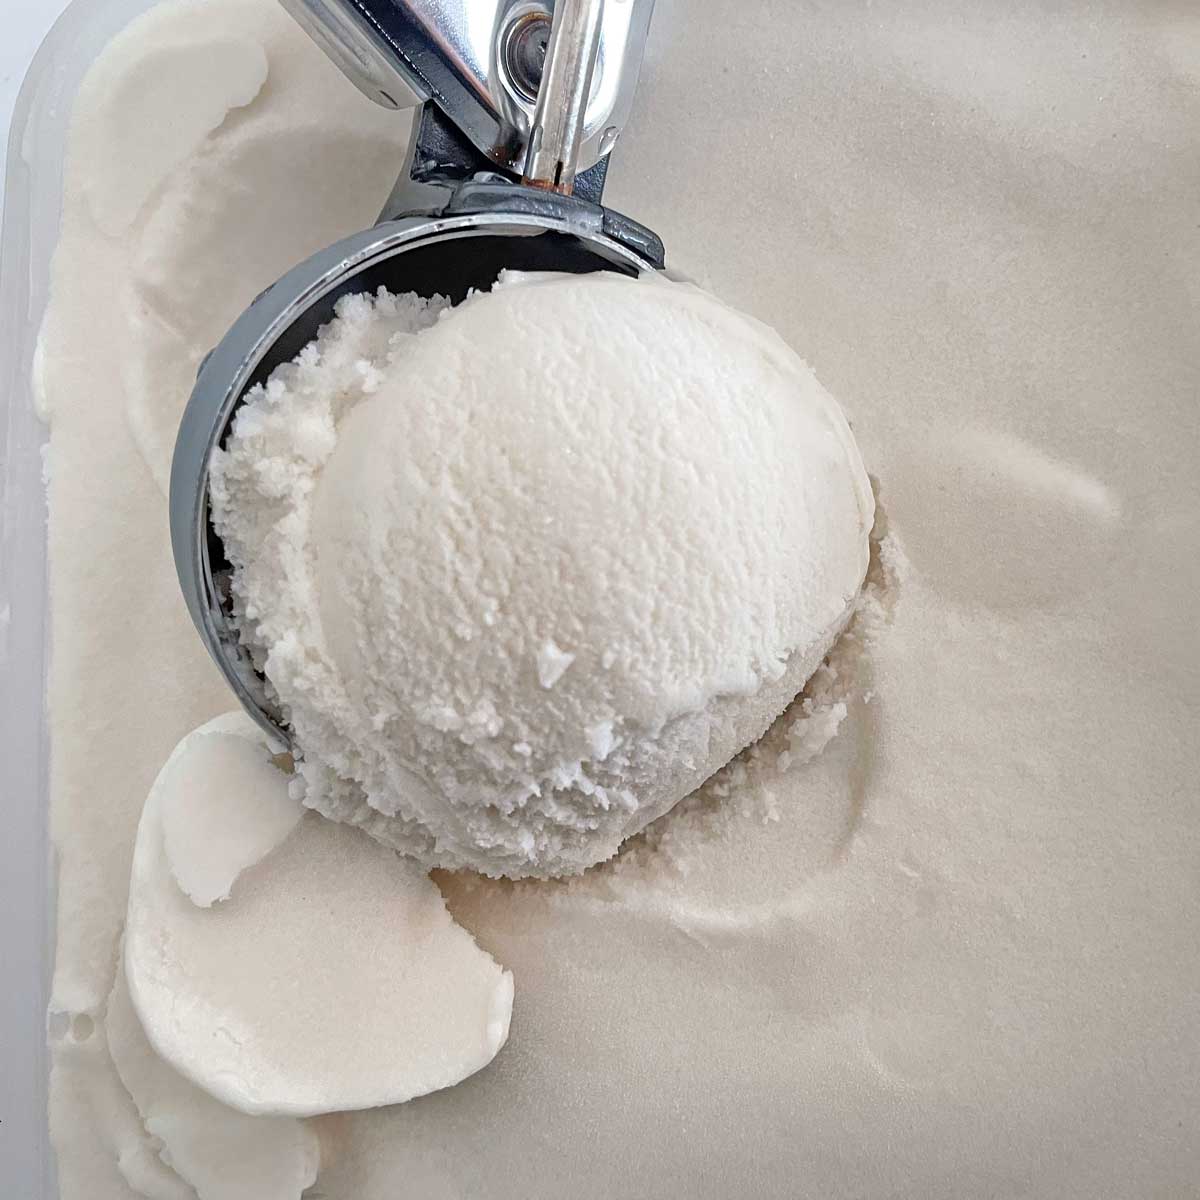 Coconut milk ice cream scoop in container.